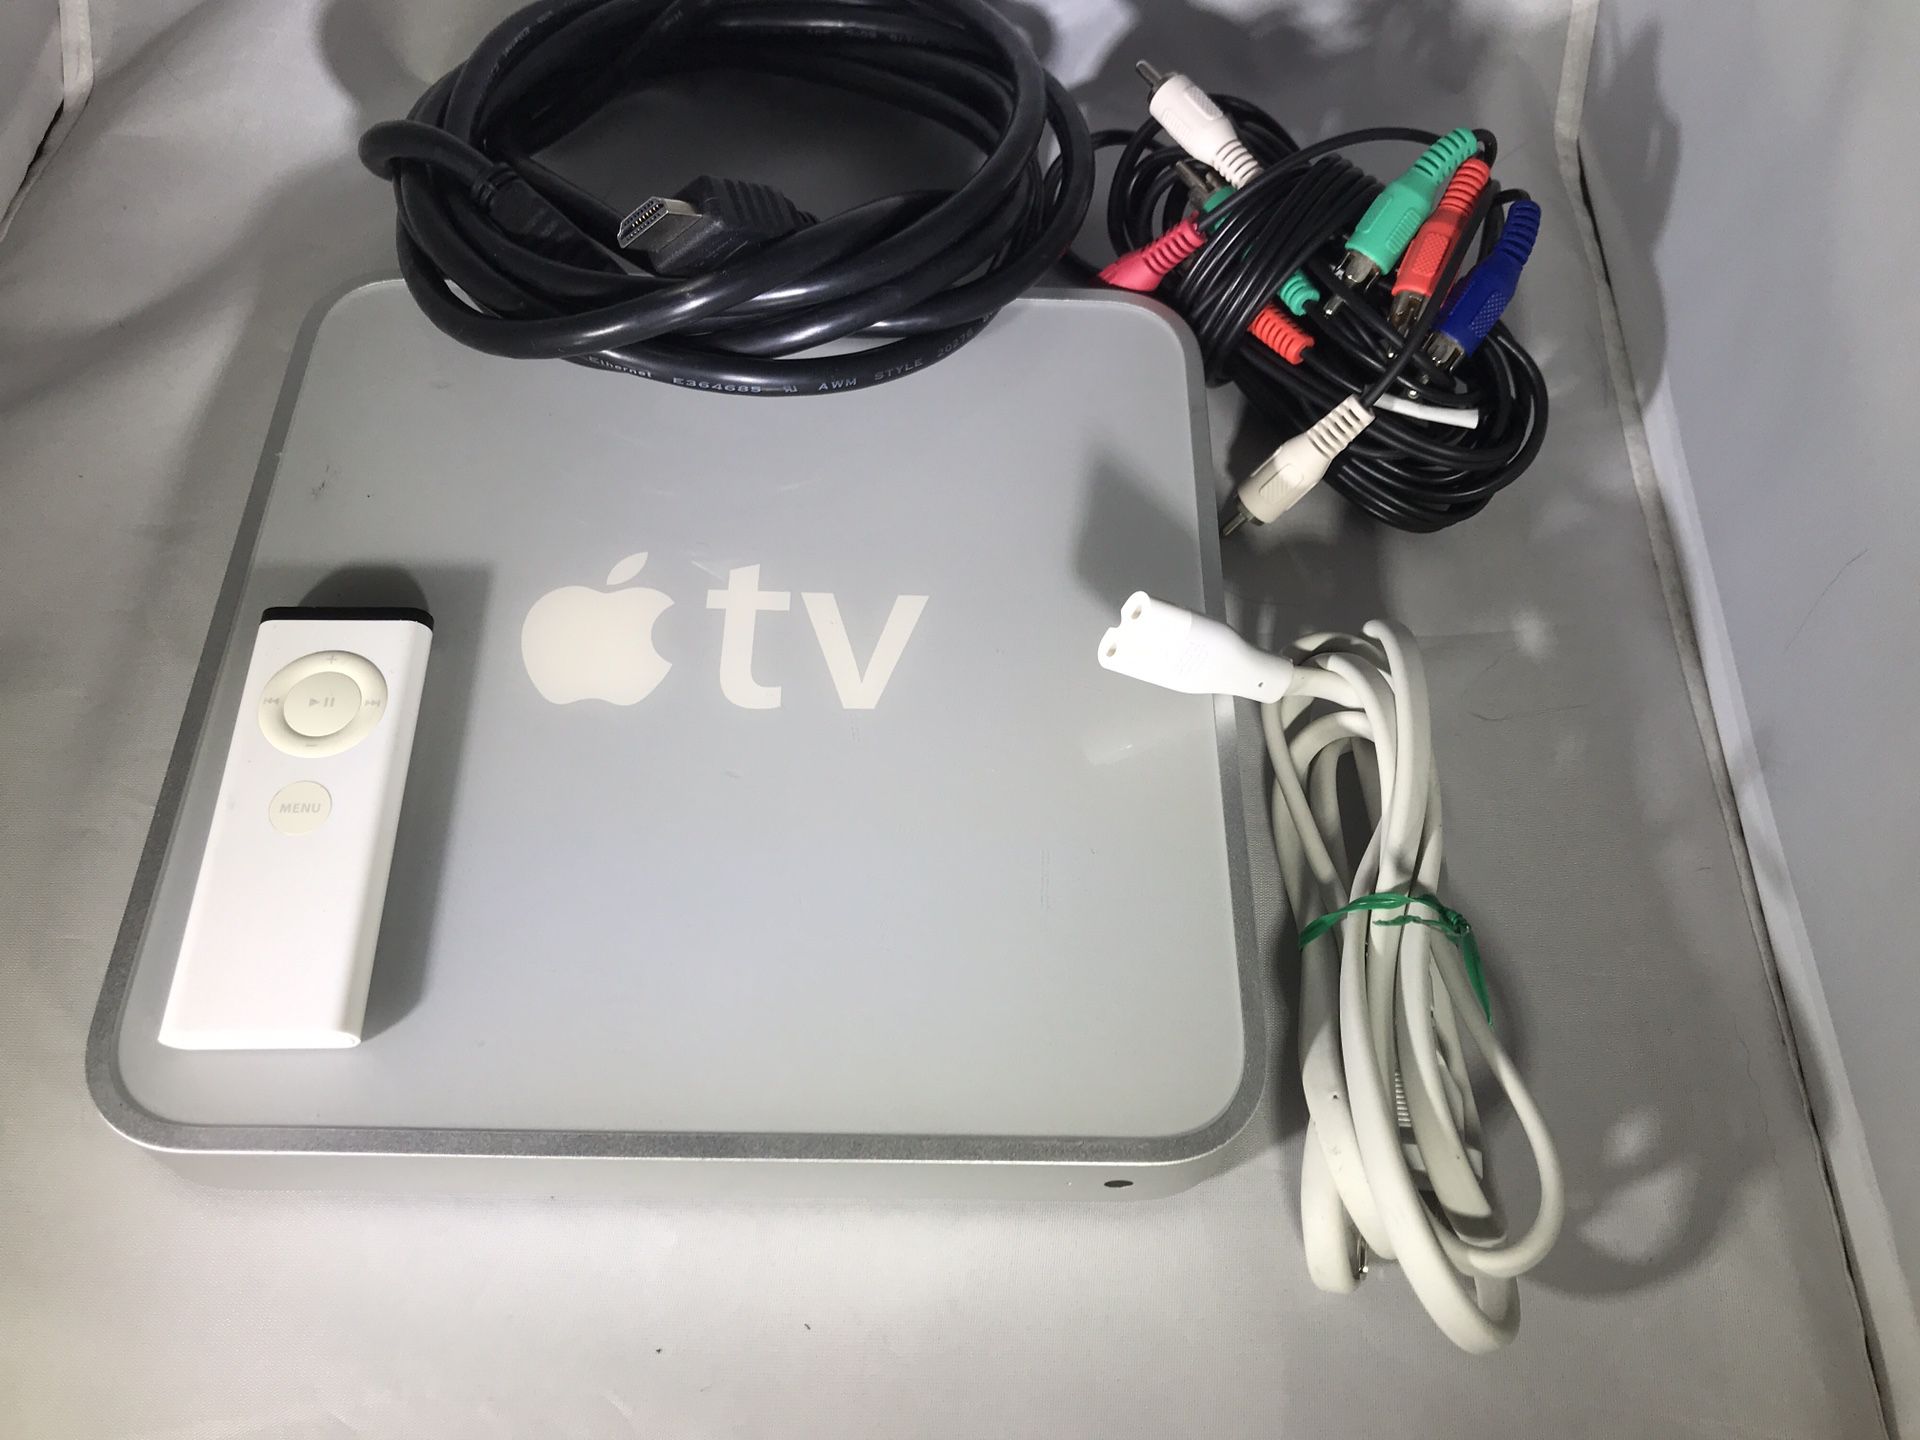 Apple TV Media Streamer A1218 First Generation